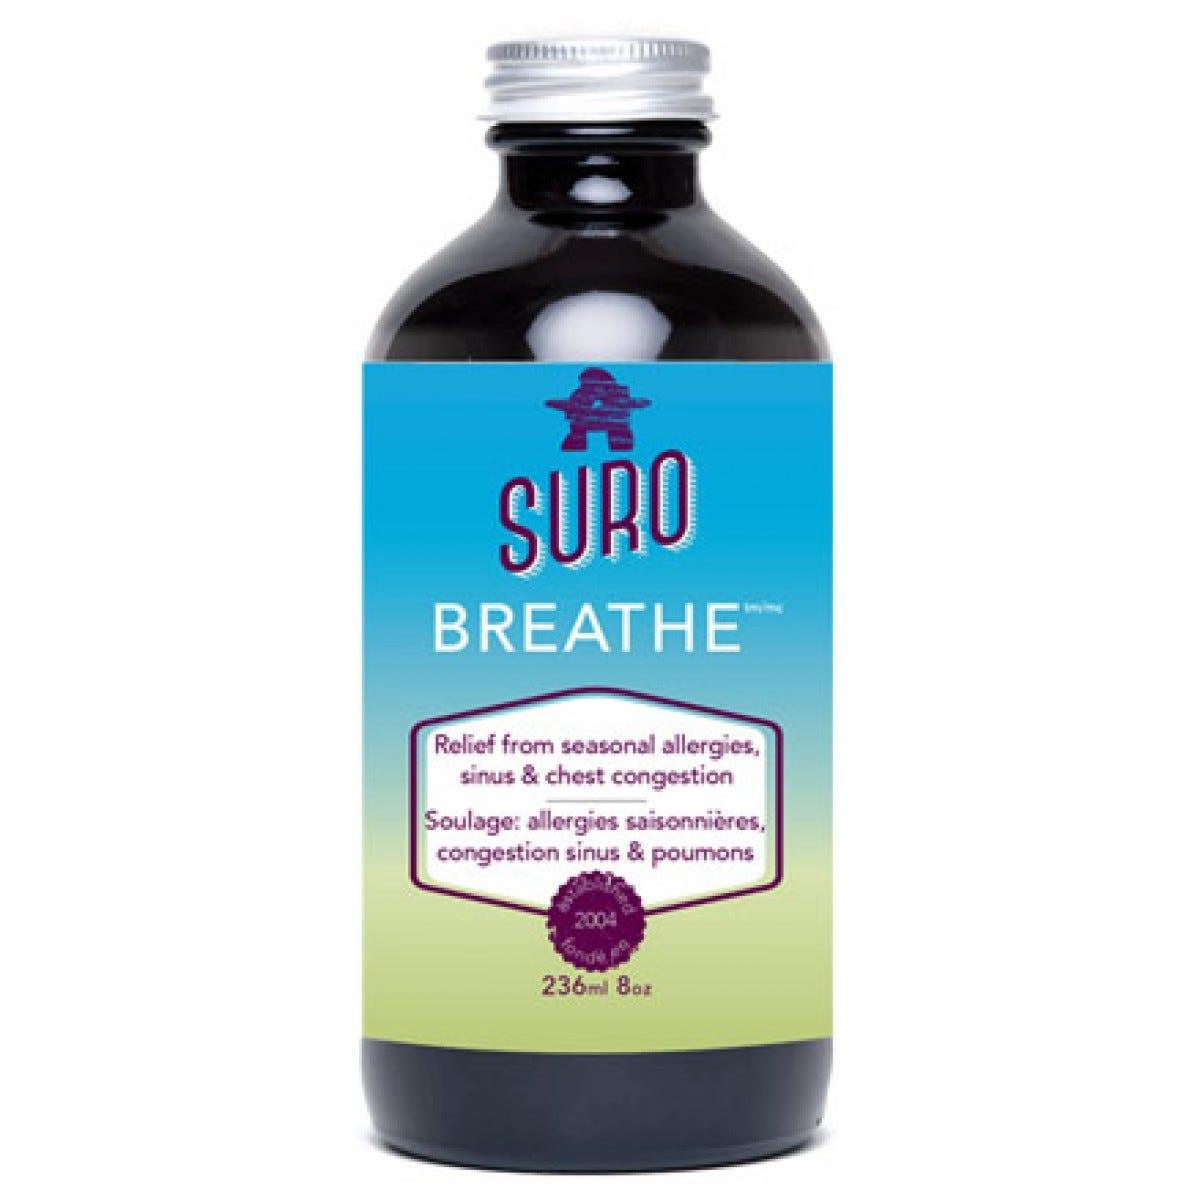 Suro Breath Solutions